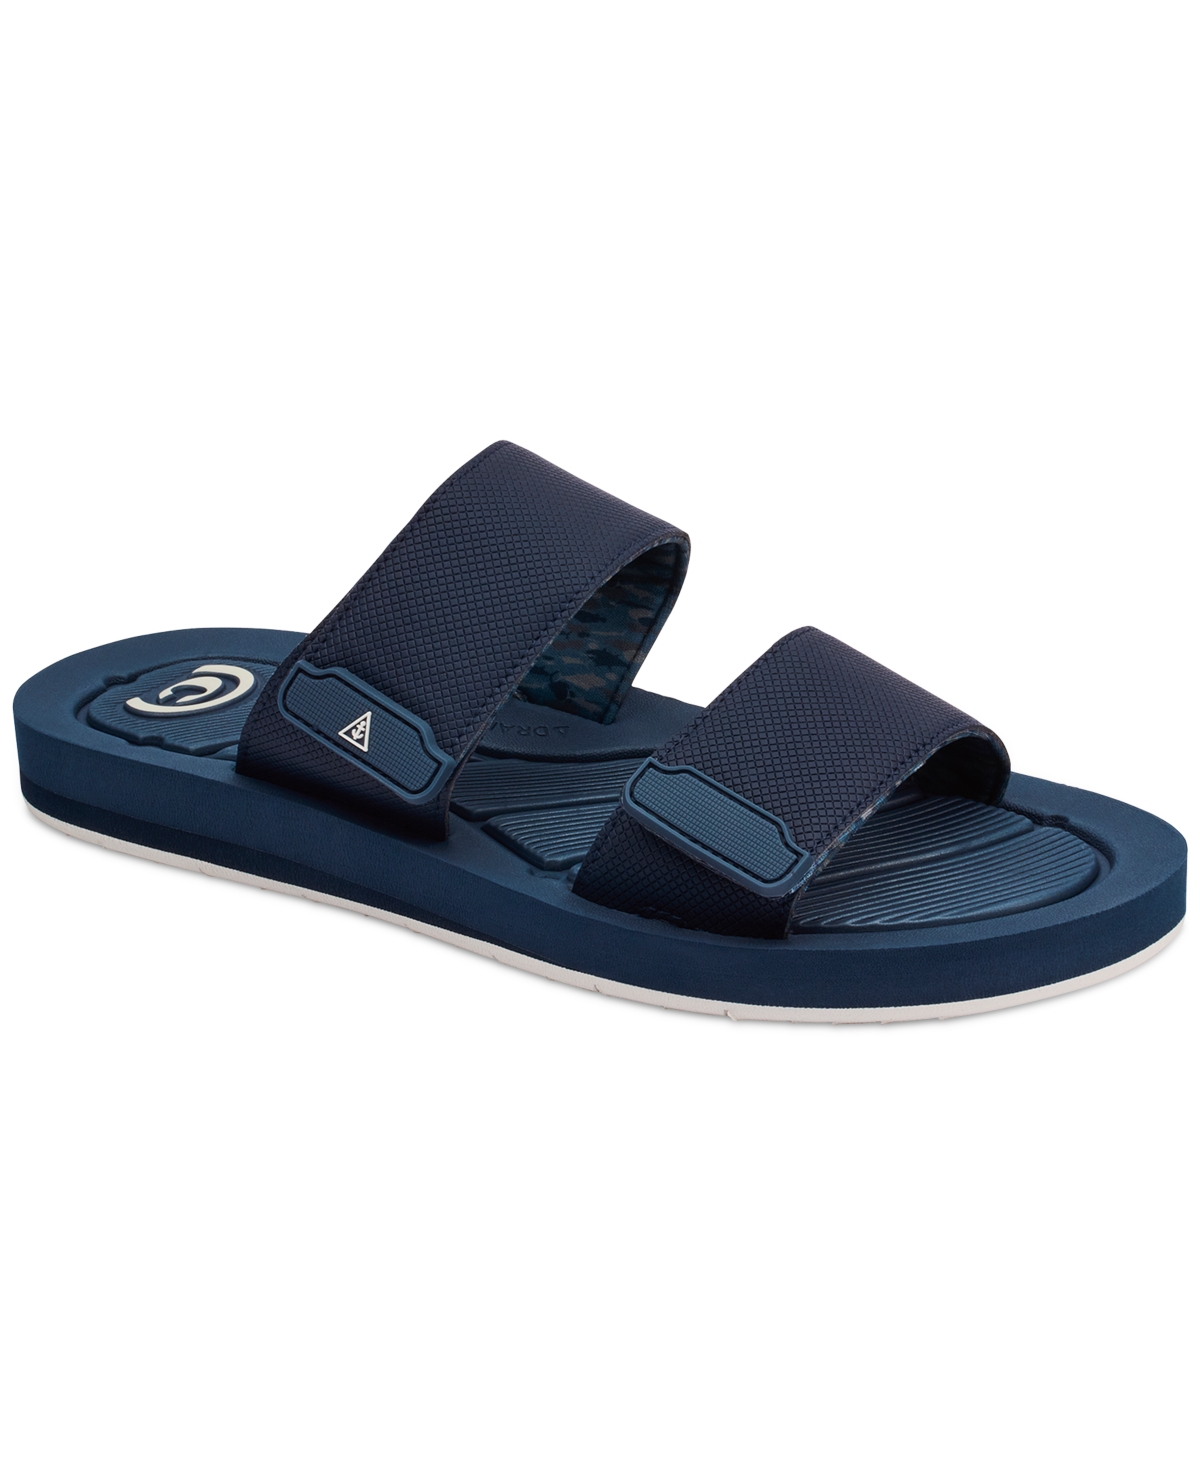 Men's Hobgood Odyssey Slip On Strap Sandals - Blue